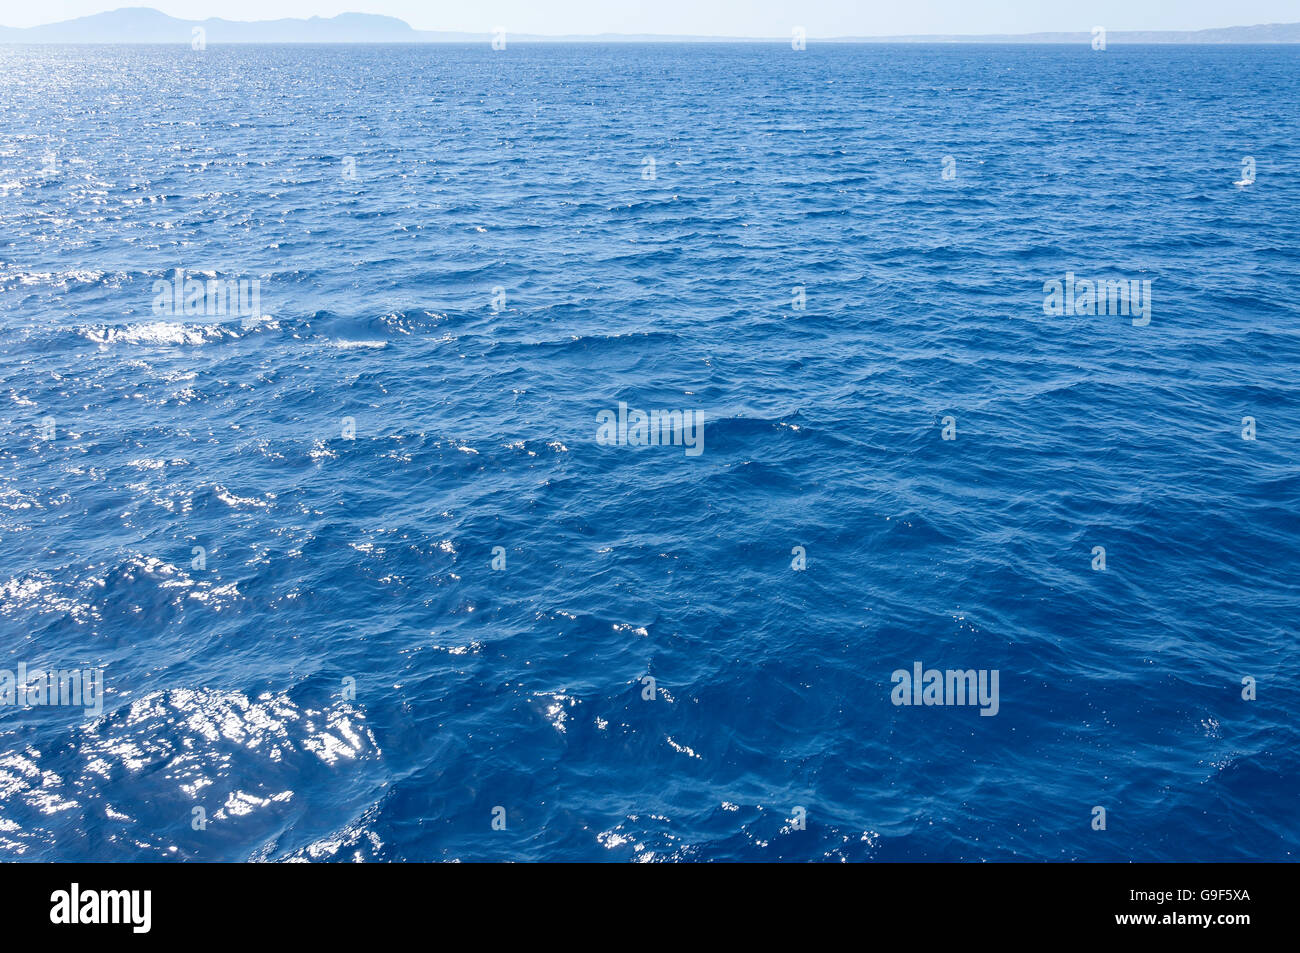 Calm seas off Nisyros (Nissyros), The Dodecanese, South Aegean Region, Greece Stock Photo